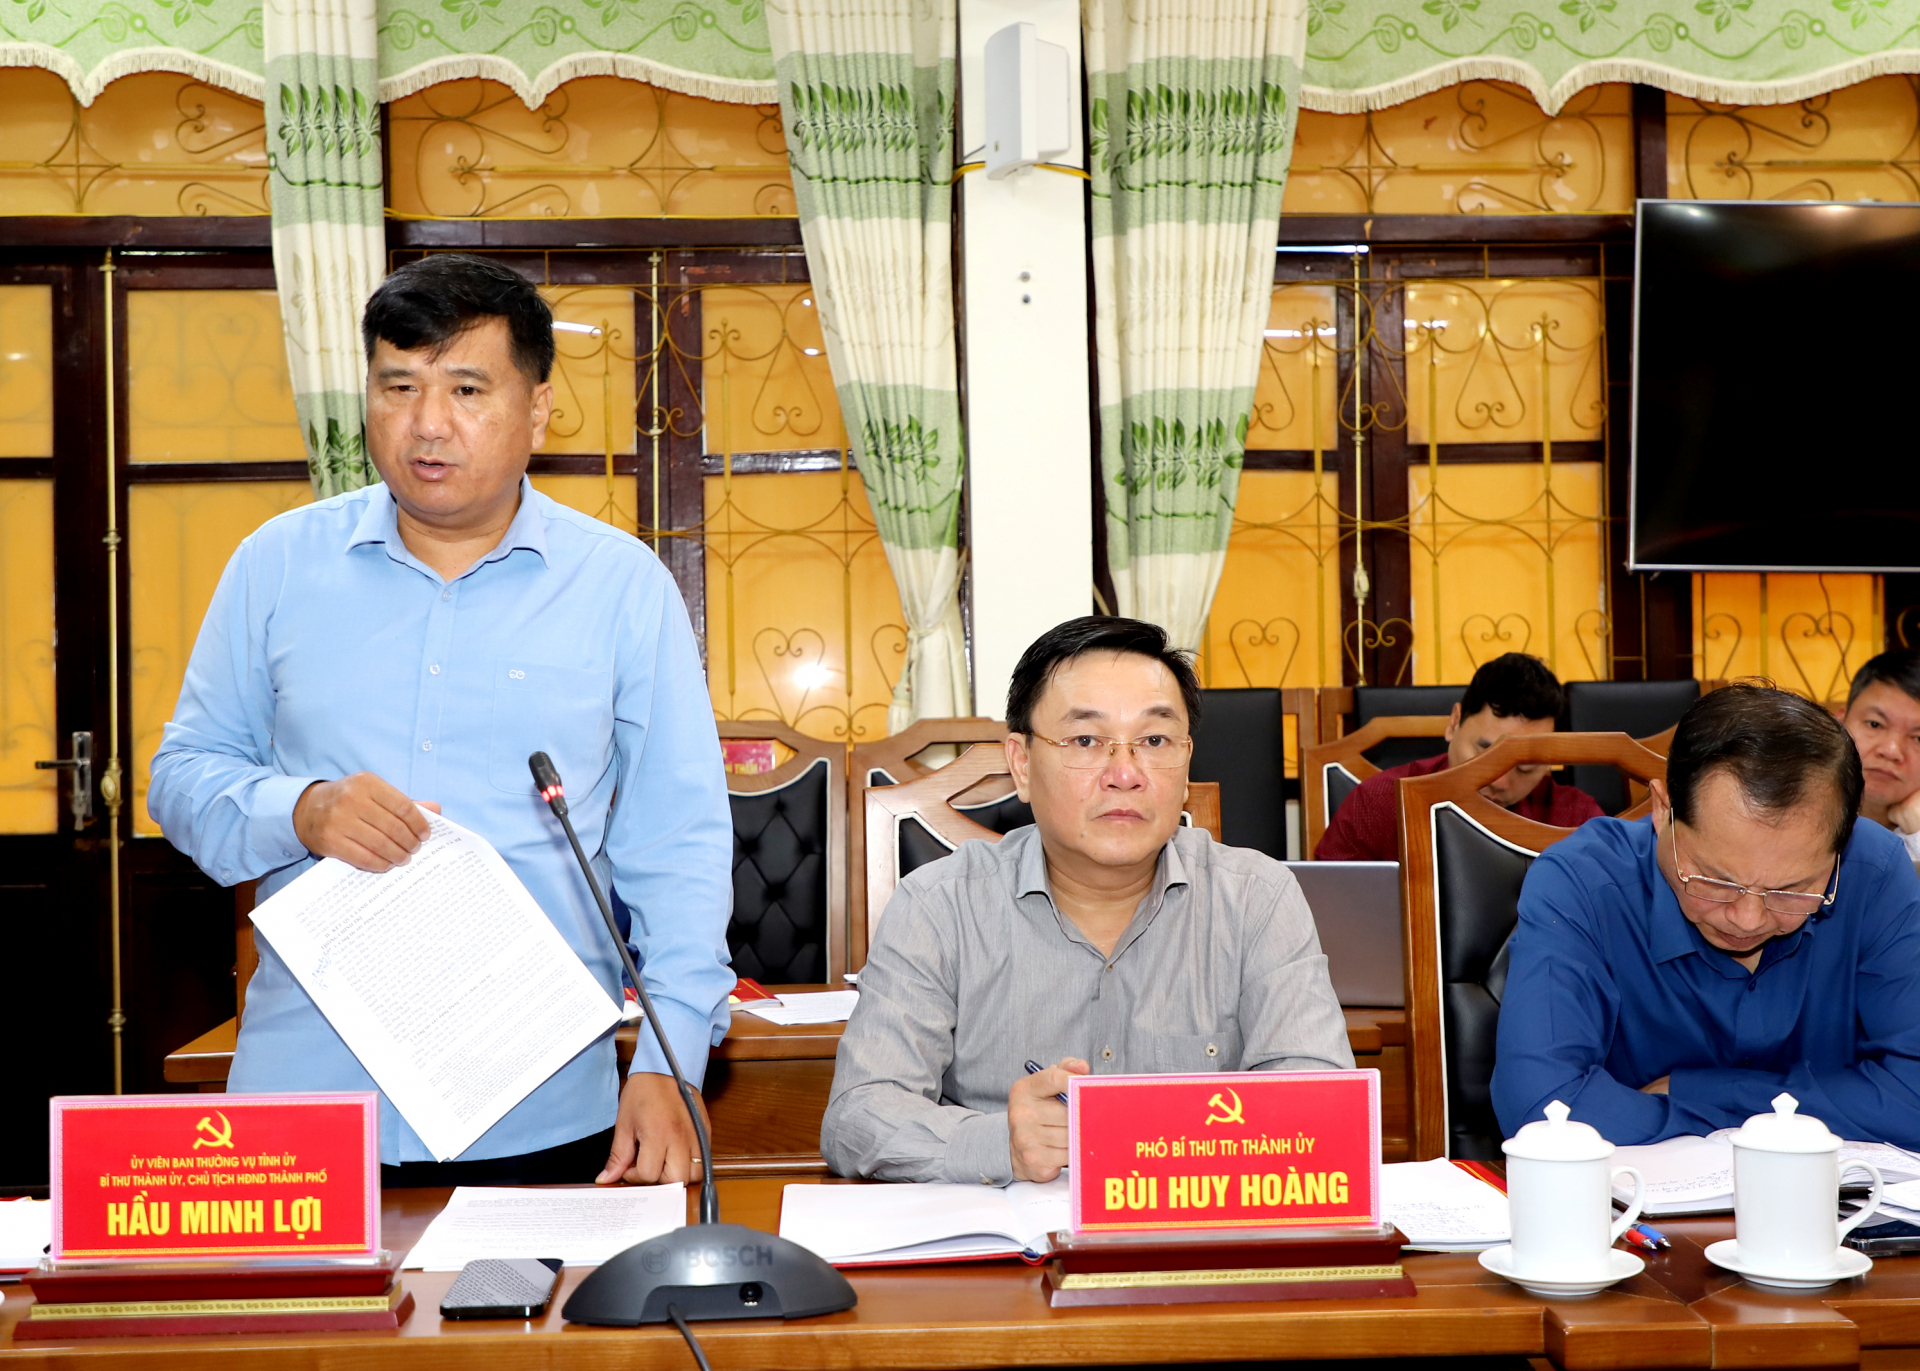 Bí thư Thành ủy Hầu Minh Lợi báo cáo tình hình lãnh đạo, chỉ đạo thực hiện nhiệm vụ chính trị 10 tháng đầu năm của BTV Thành ủy.